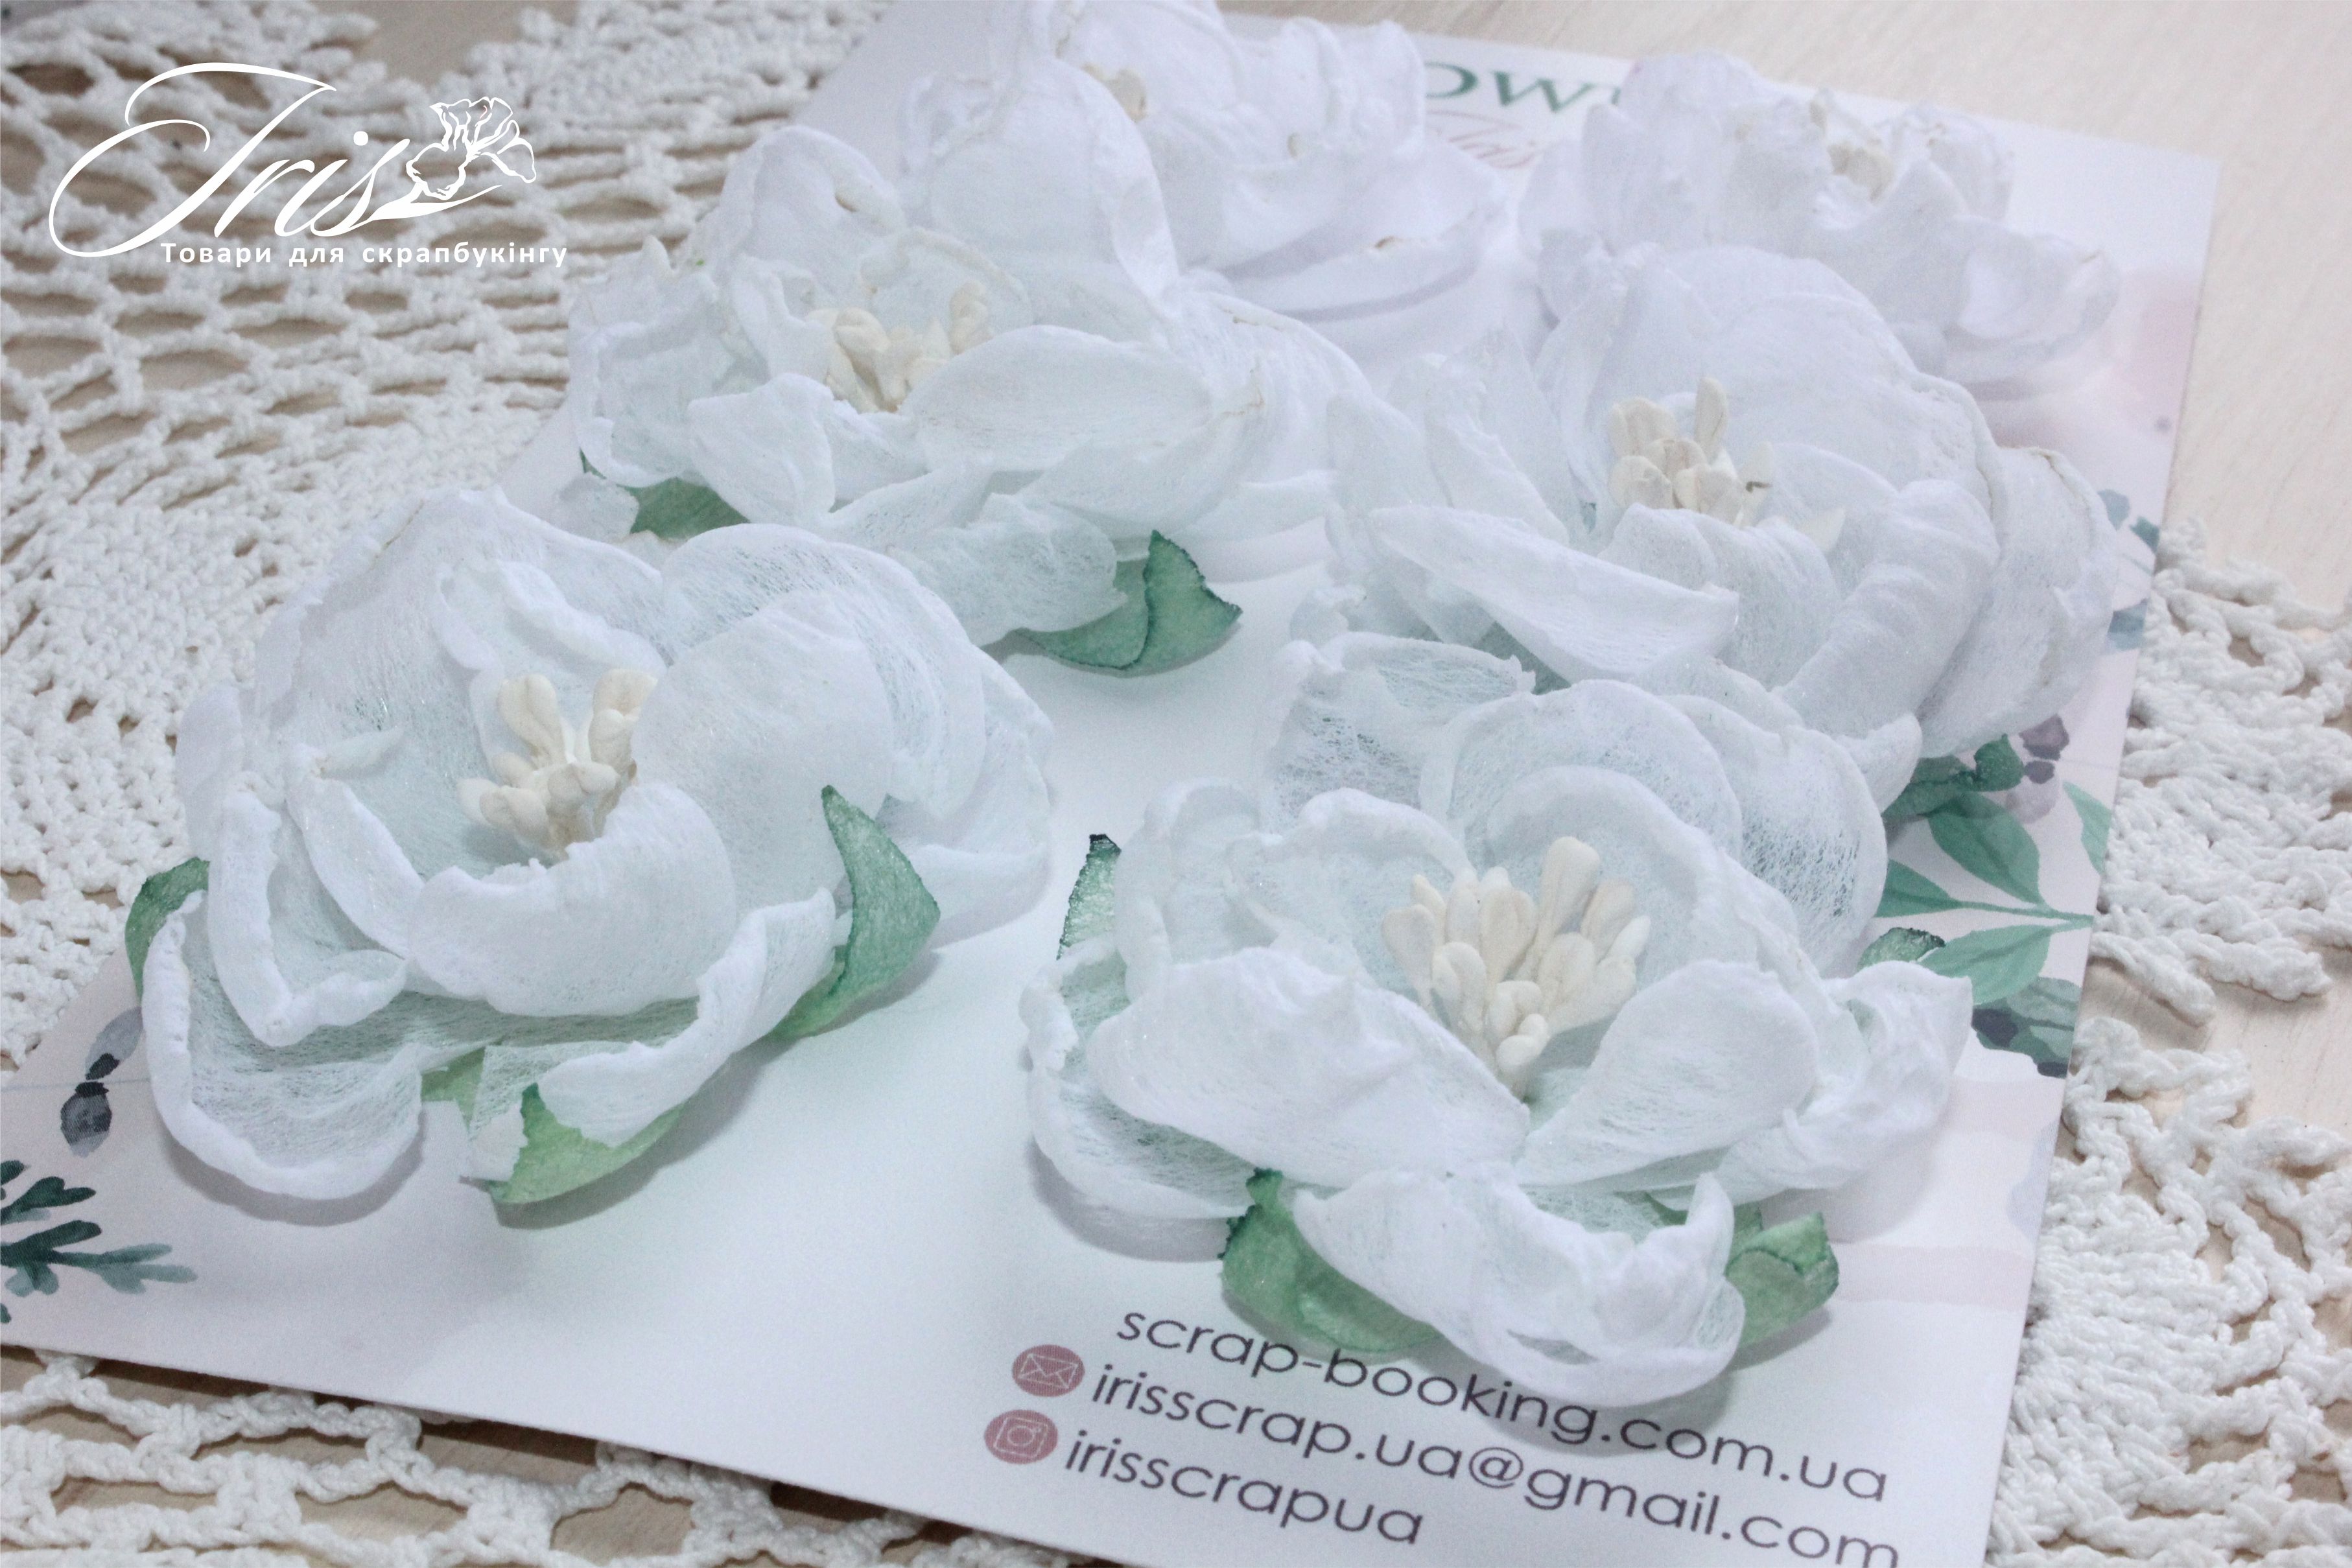 Набор цветов и декора, Royalty flowers Белые, 40-50 мм, 6 шт, Iris